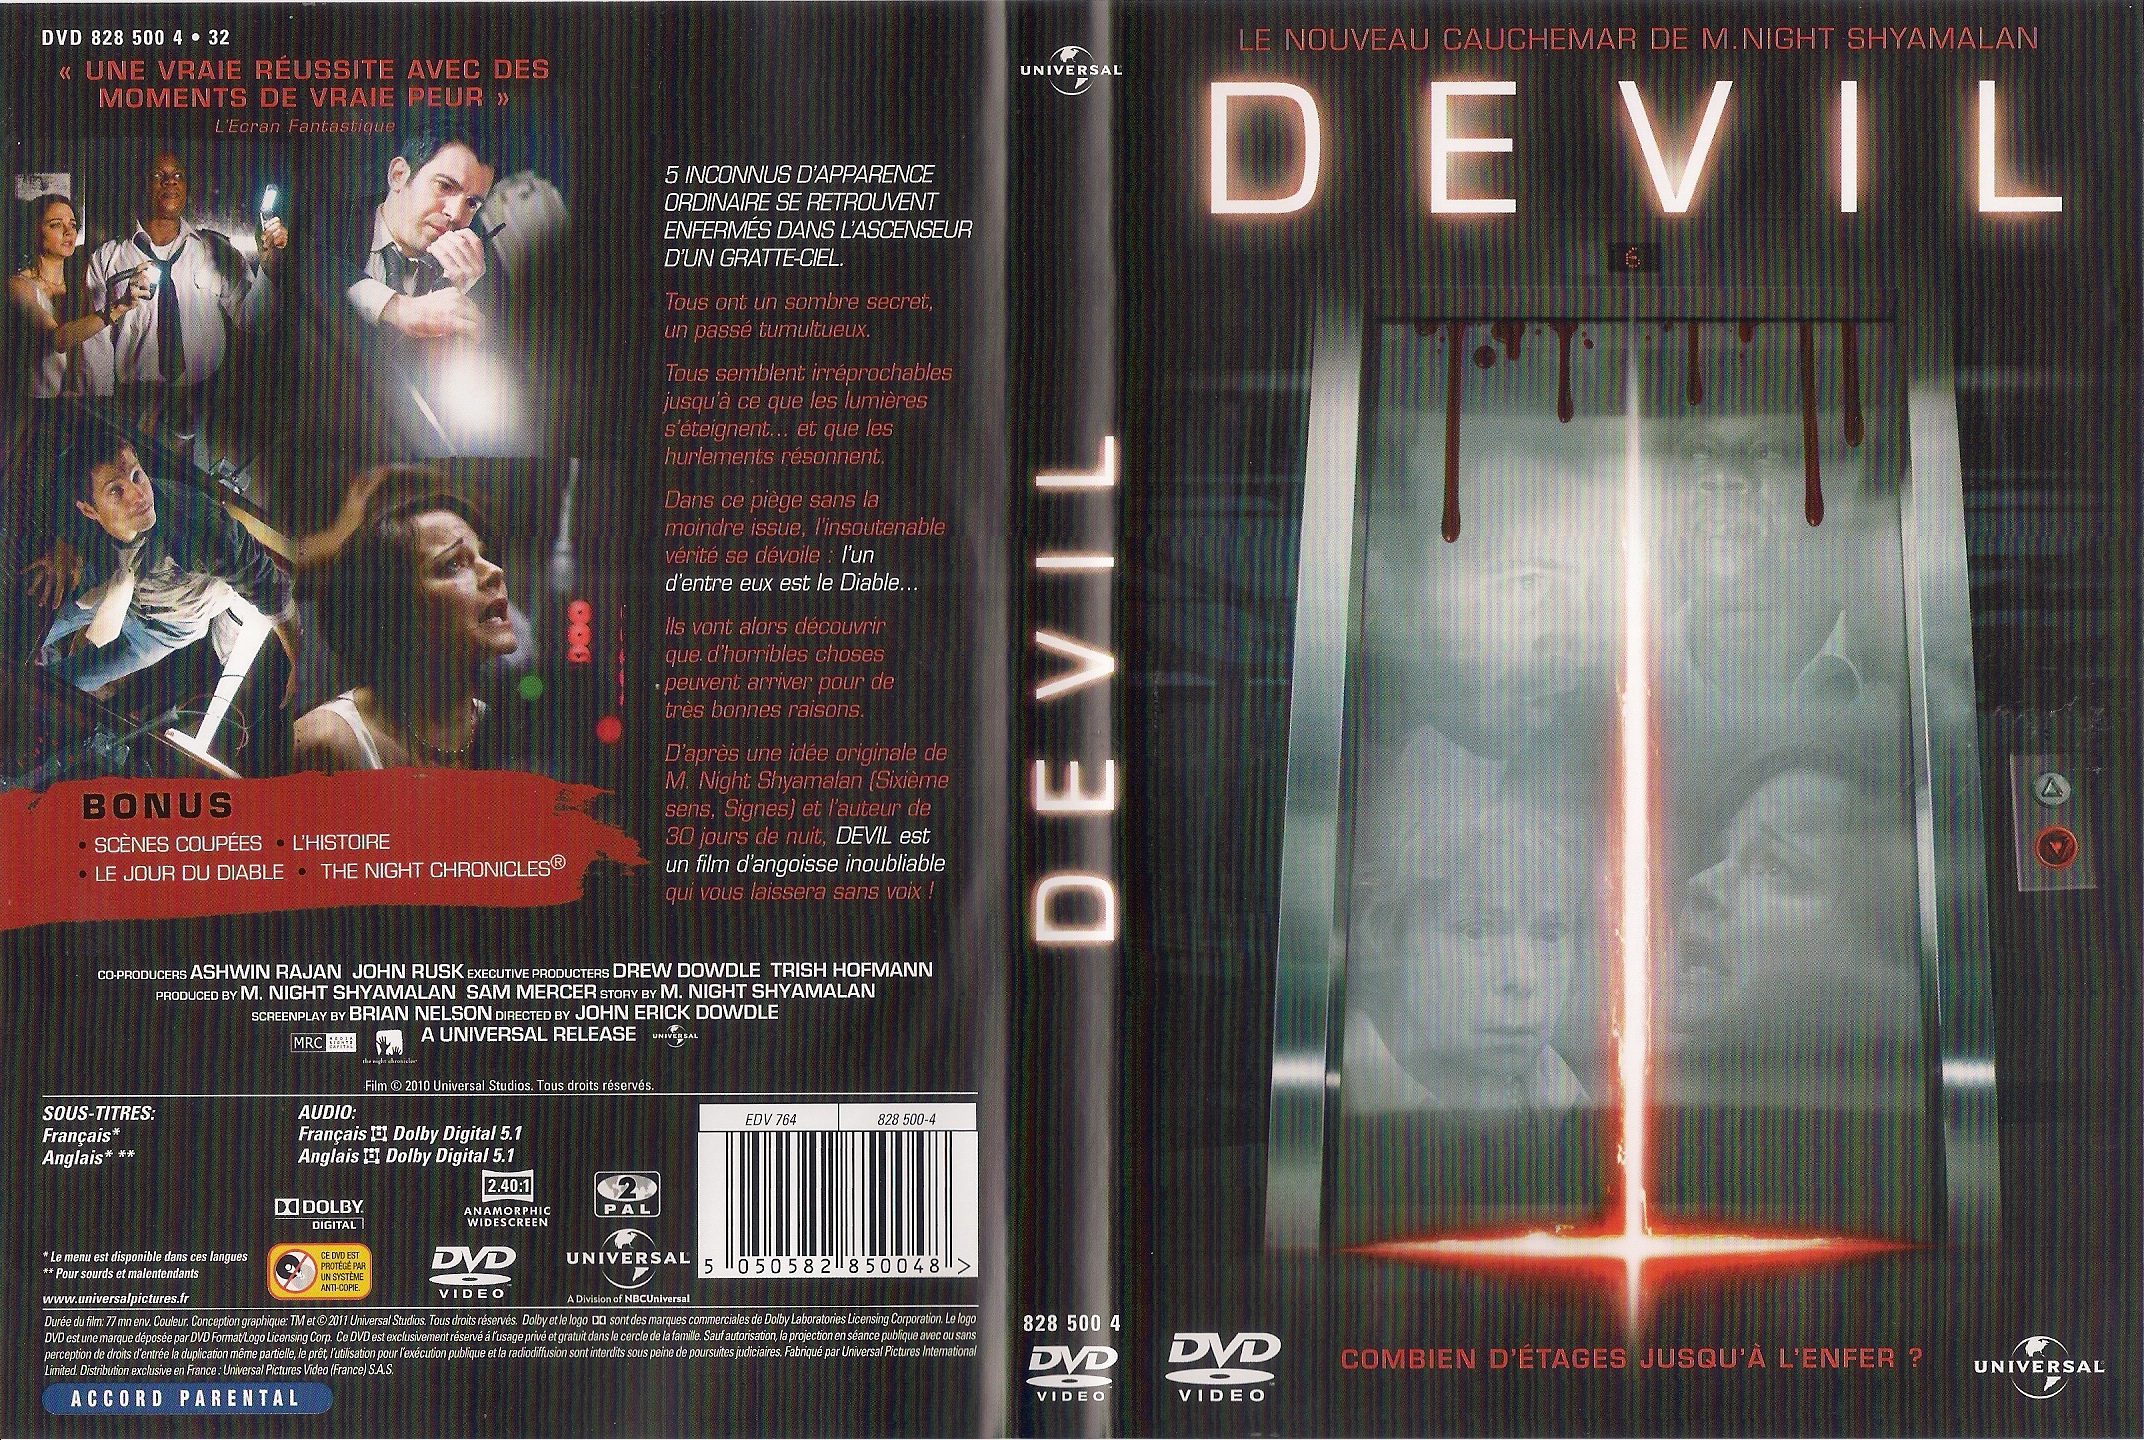 Jaquette DVD Devil